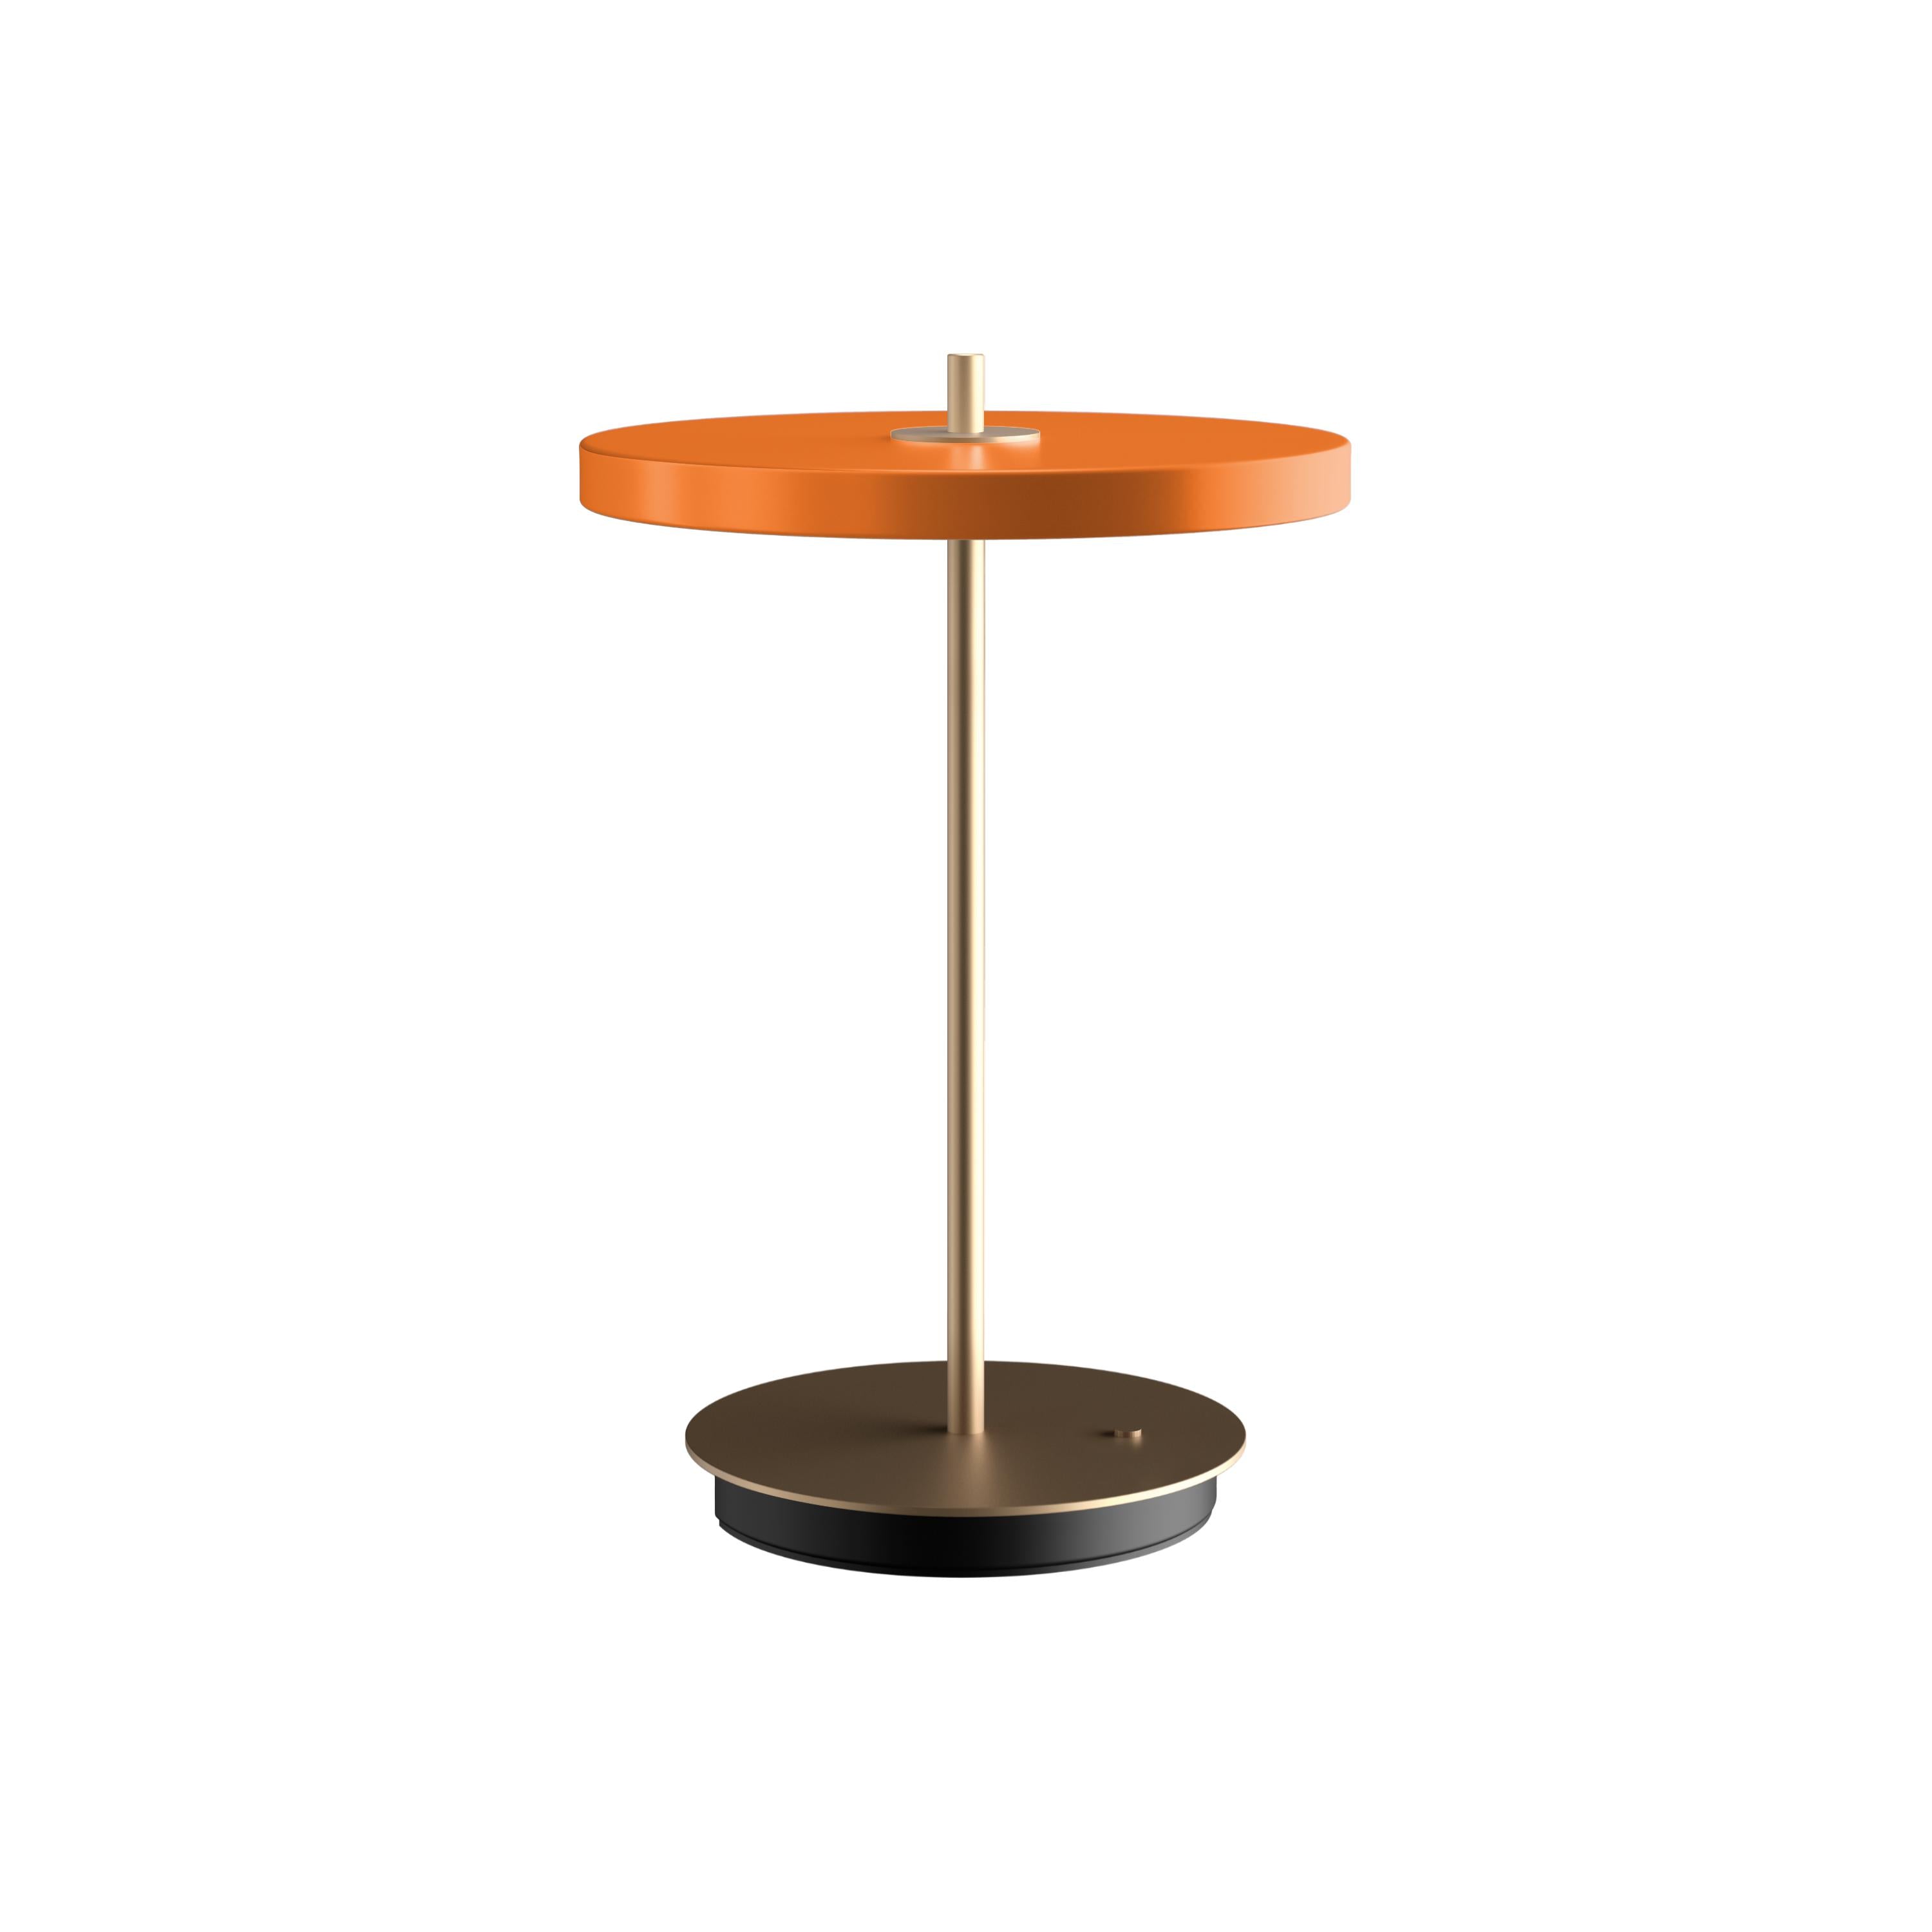 UMAGE ASTERIA MOVE LAMP TABLE, NUANCE ORANGE V2